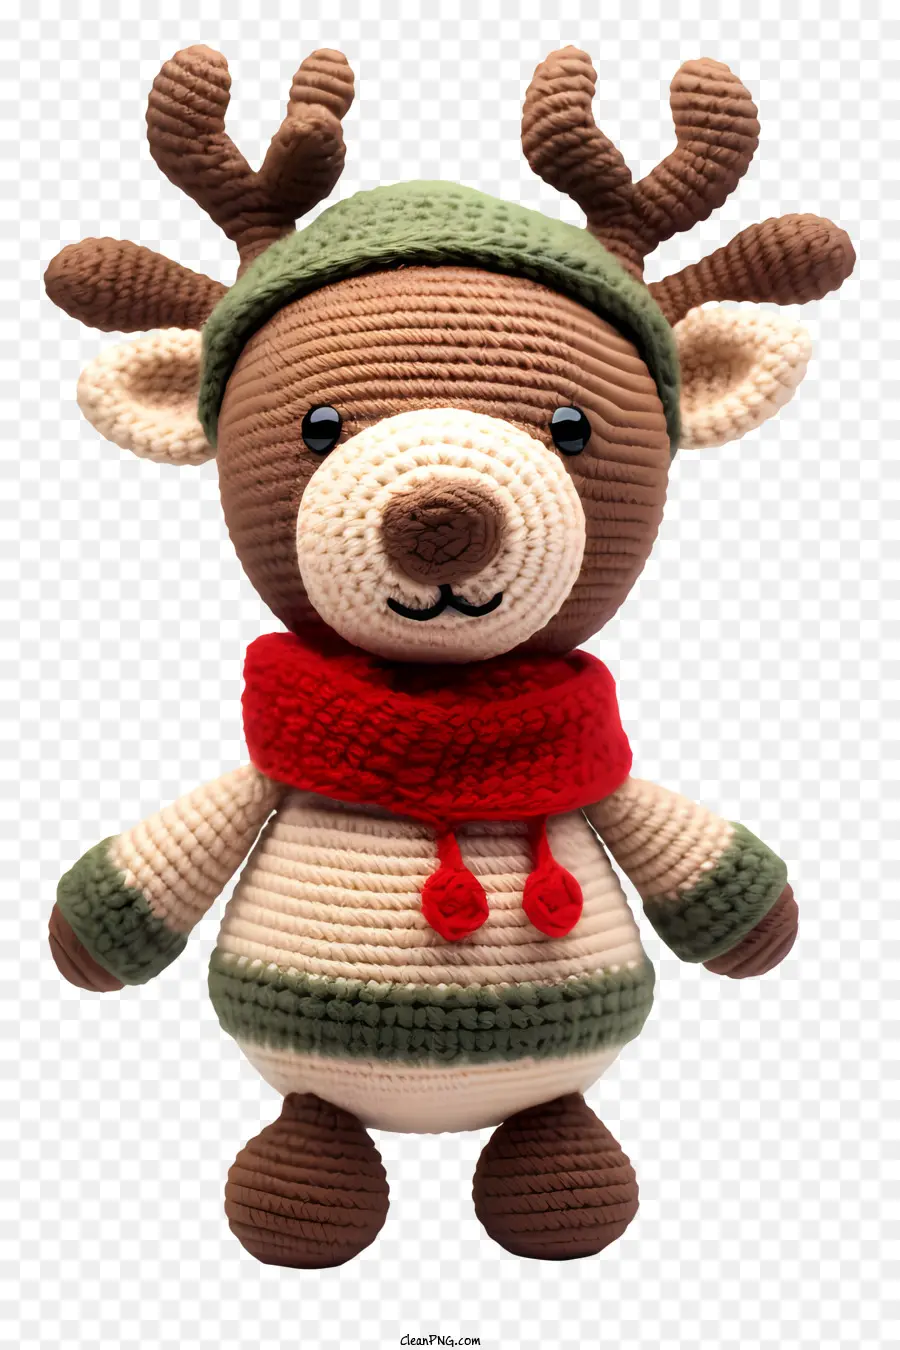 đồ trang trí giáng sinh - Gấu bông móc với khăn quàng màu đỏ và mũ ông già Noel màu xanh lá cây